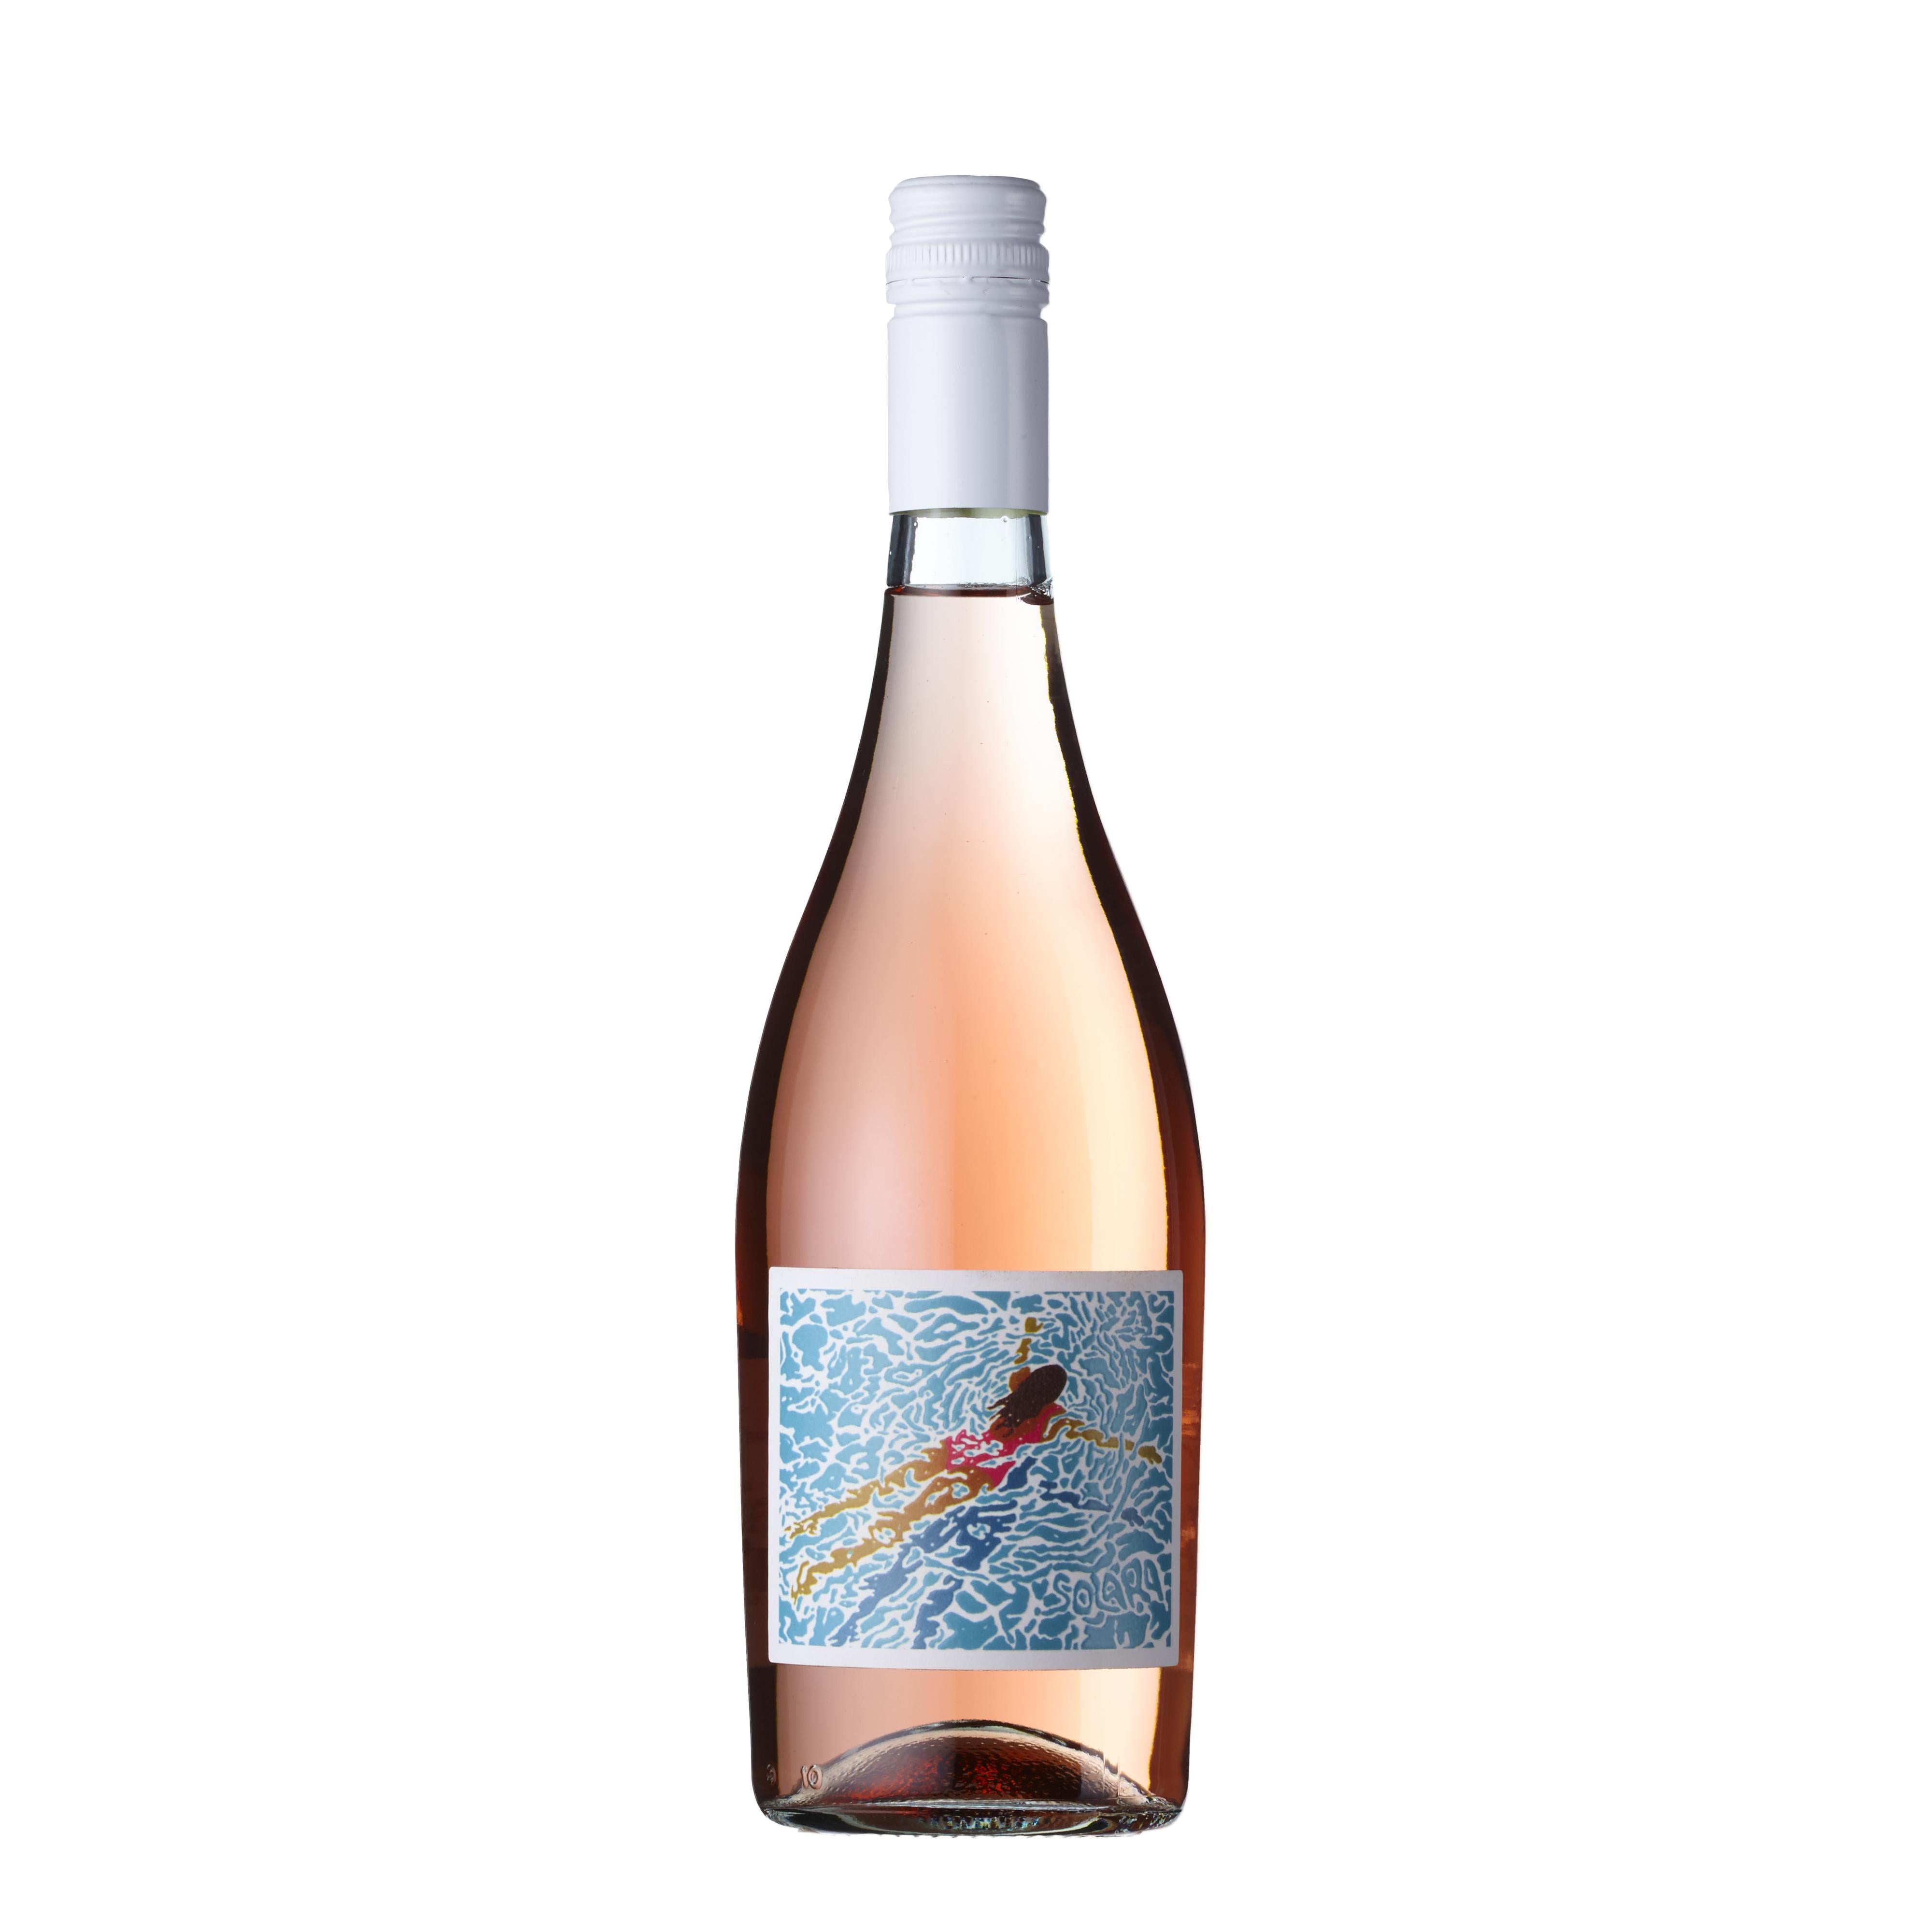 Solara Rose – Turton Wines